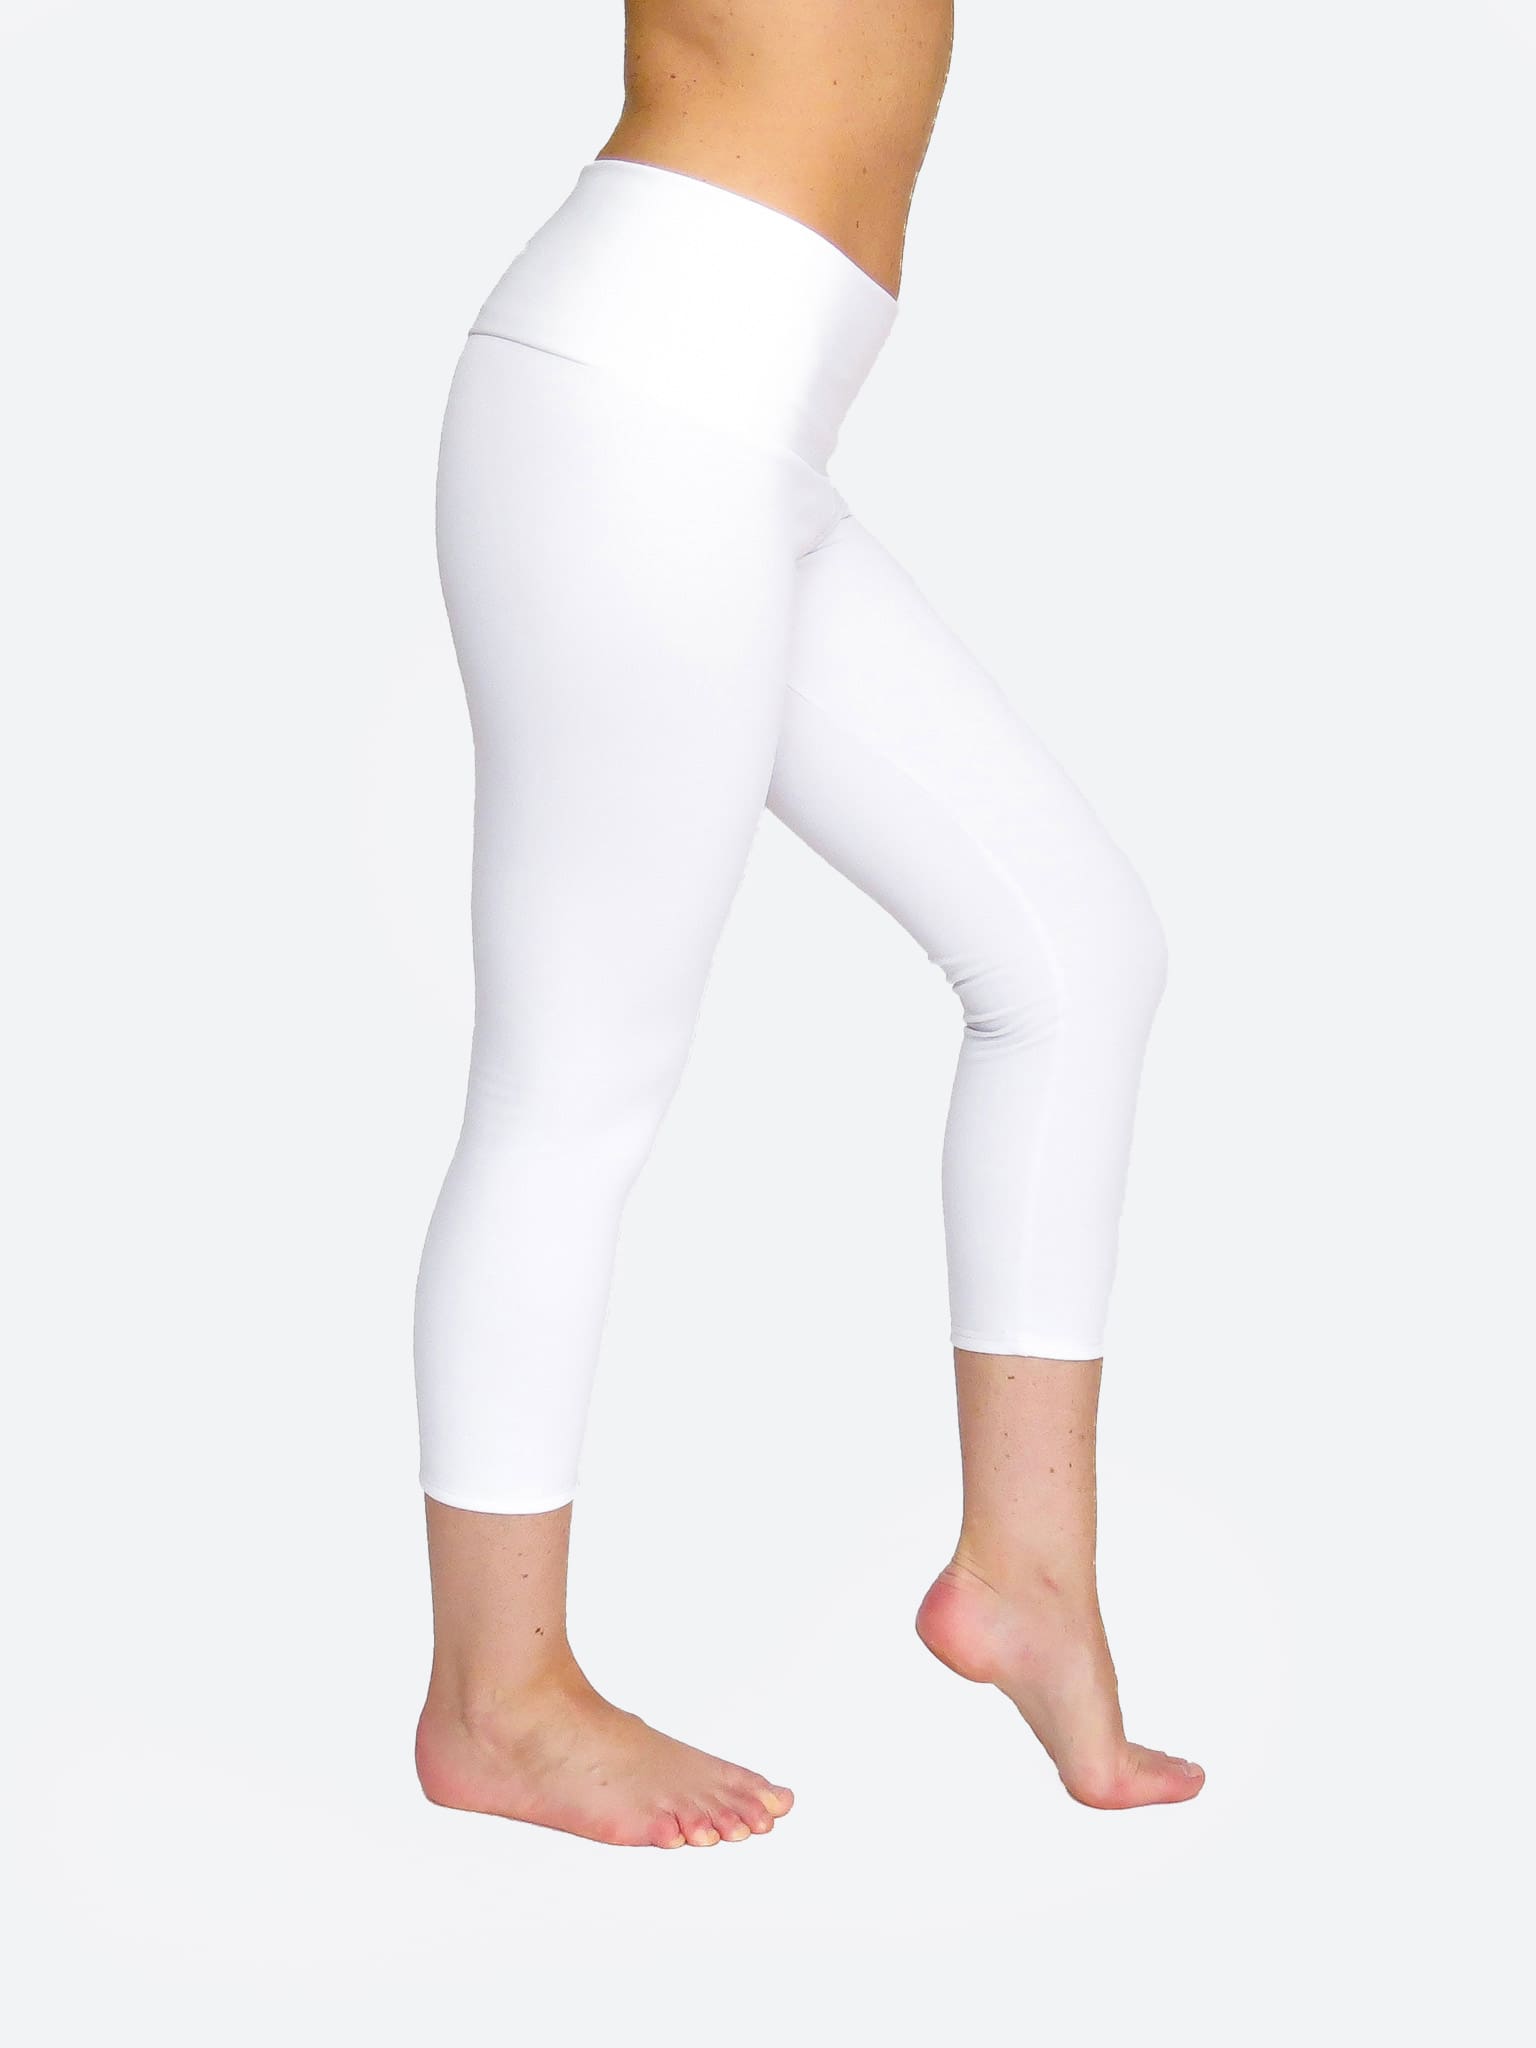 Mid Waist Capri White Leggings - Handmade Running Pants